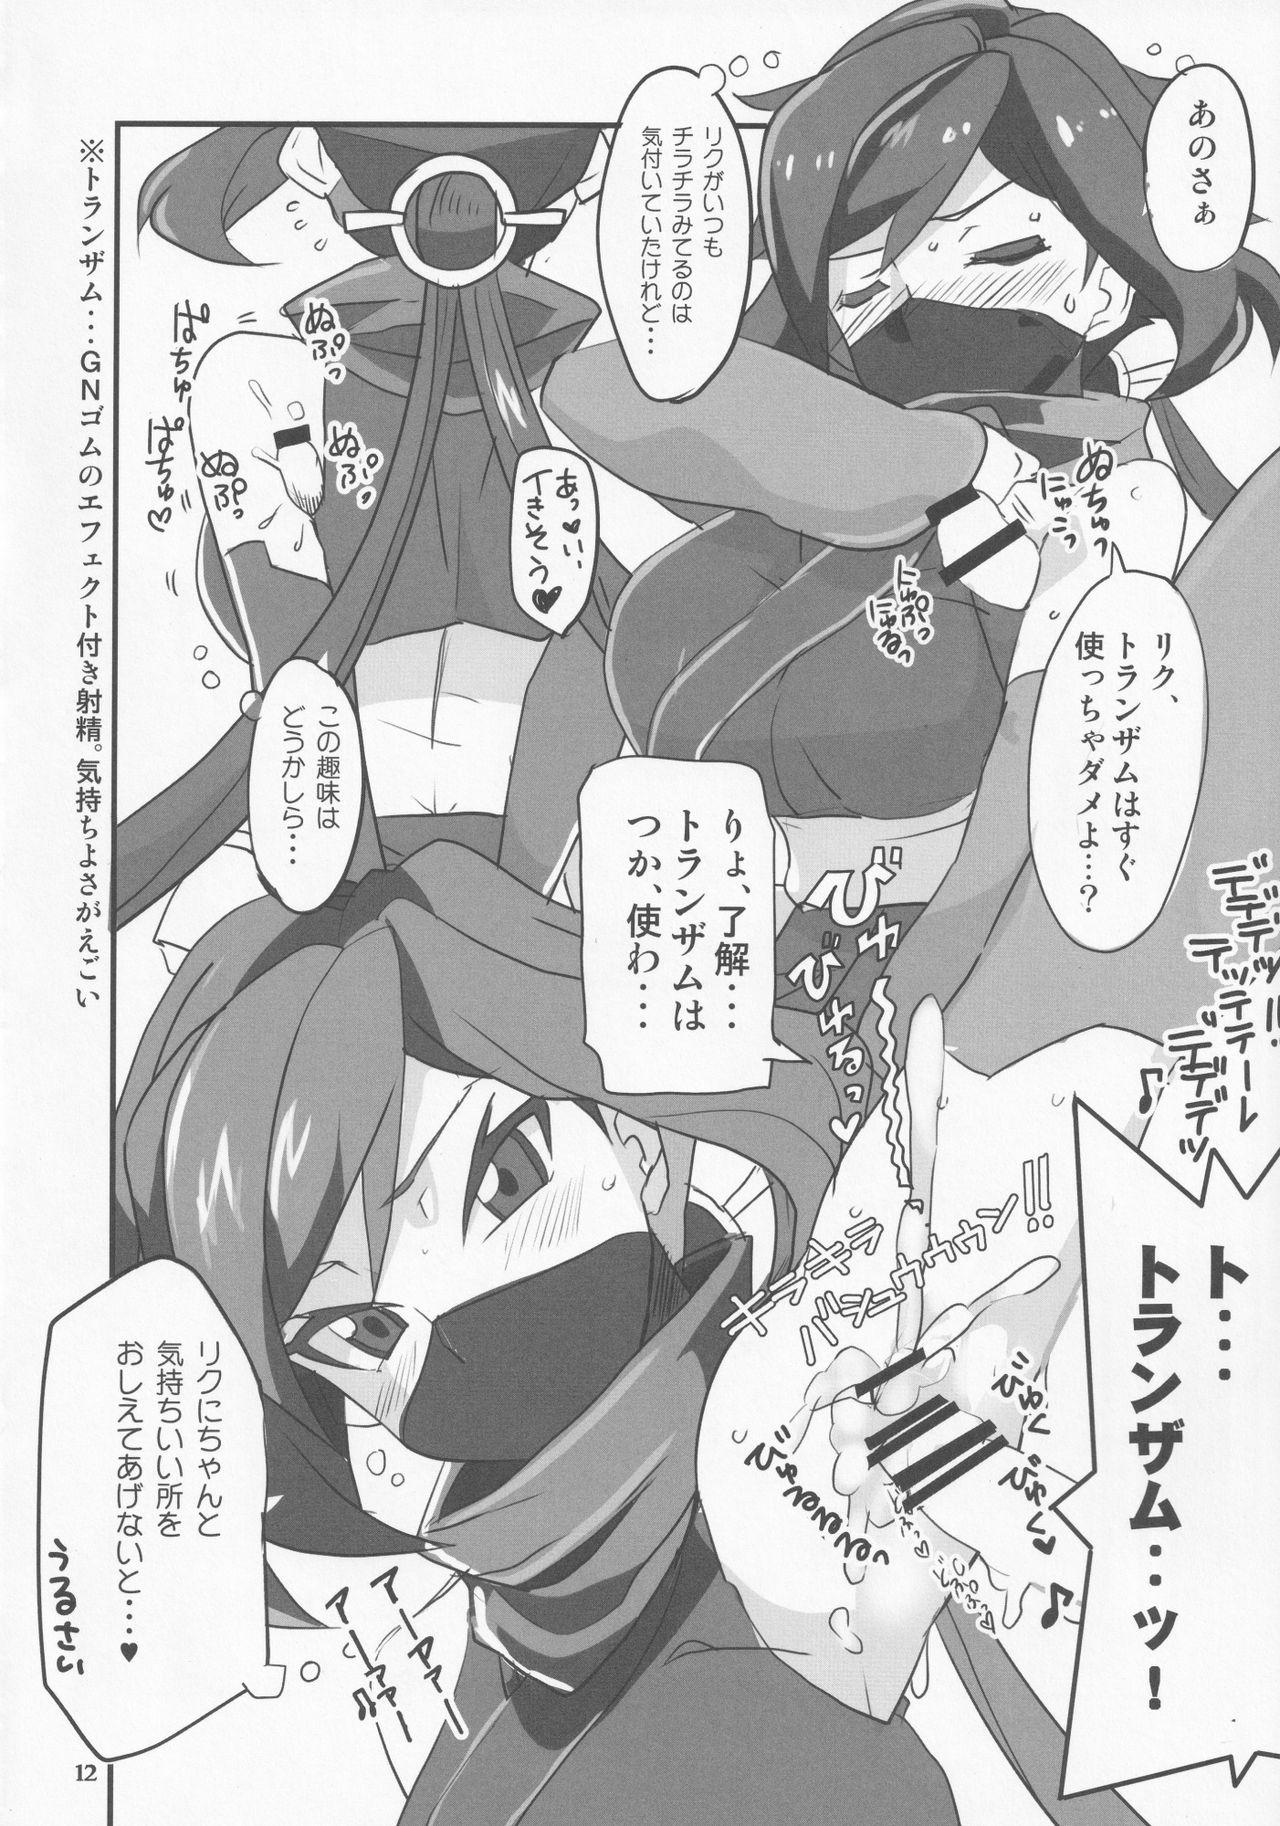 Alternative Ayame ga Kiru! - Gundam build divers 18 Porn - Page 11